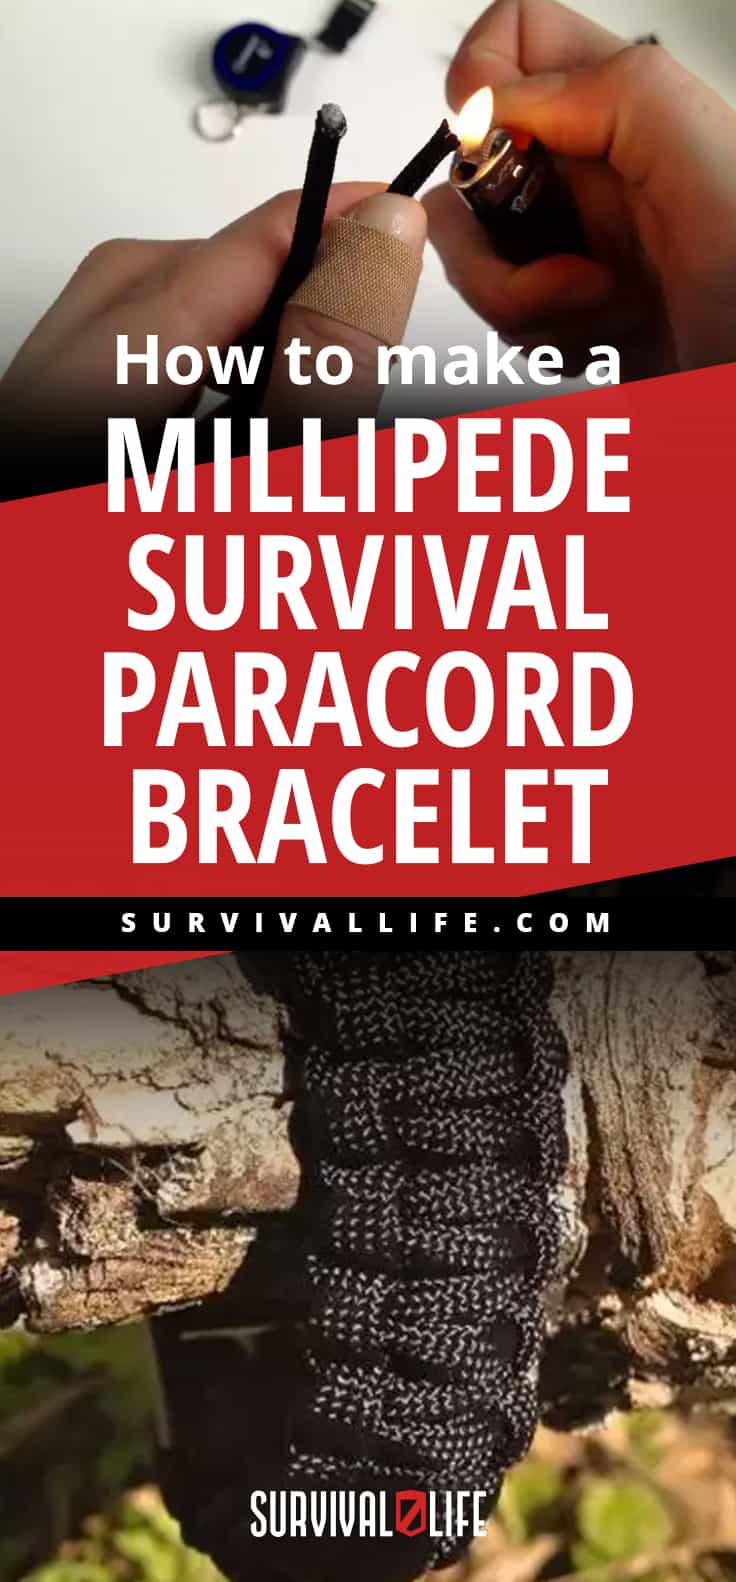 Paracord Bracelet | How to Make a Millipede Survival Paracord Bracelet